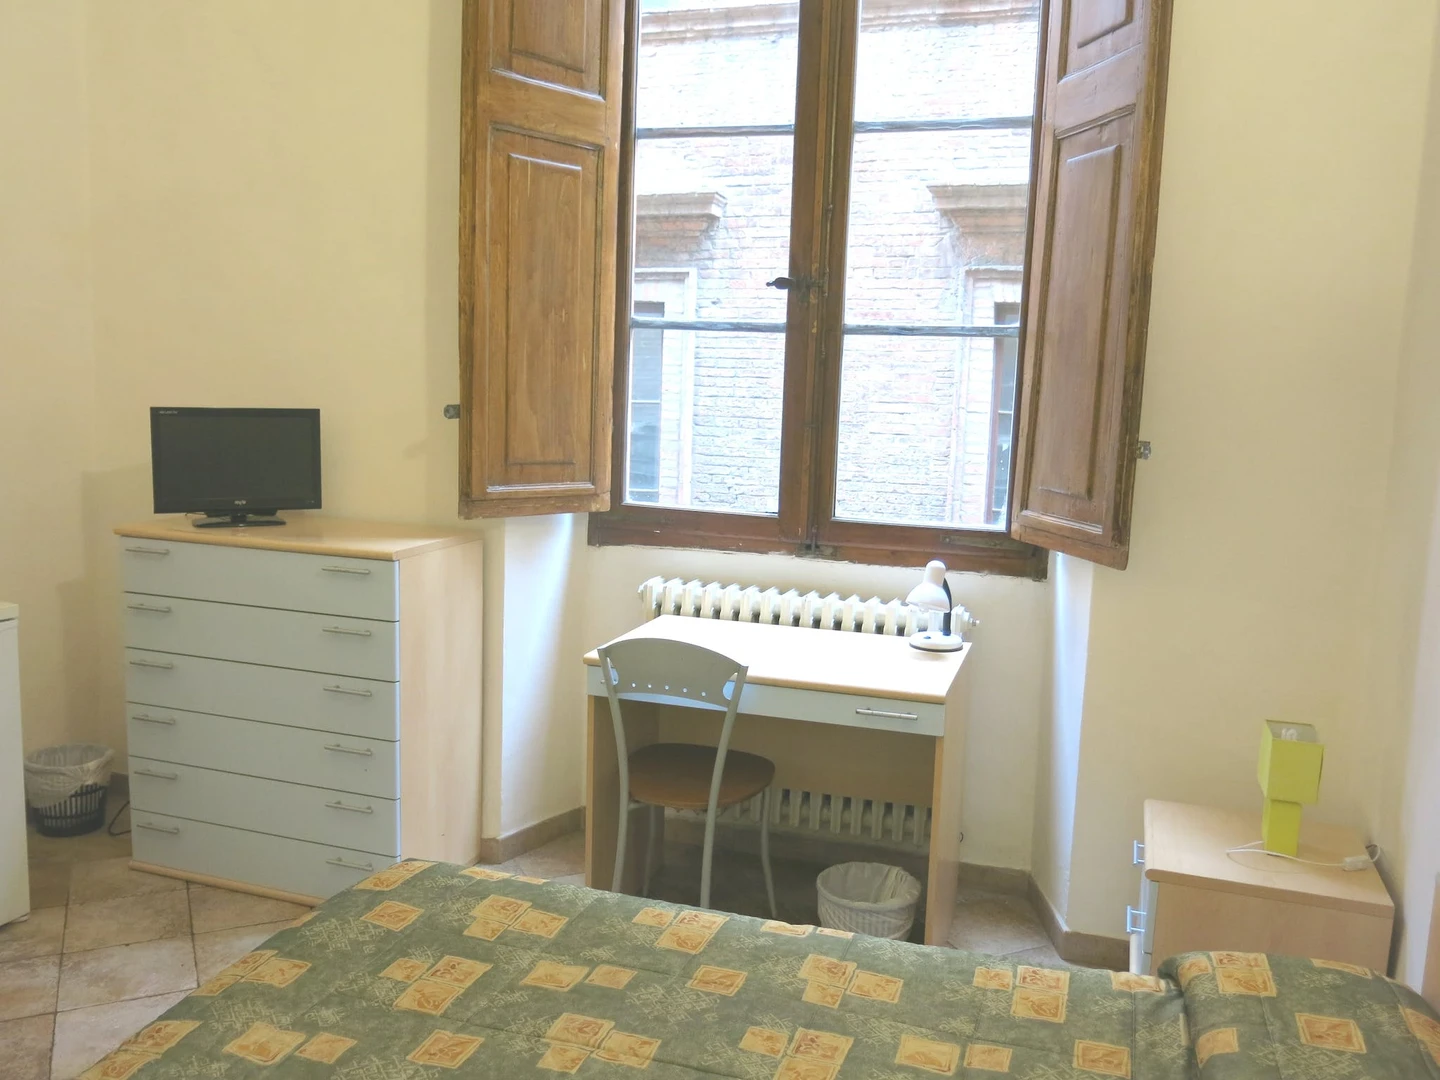 Luminosa stanza condivisa in affitto a Siena